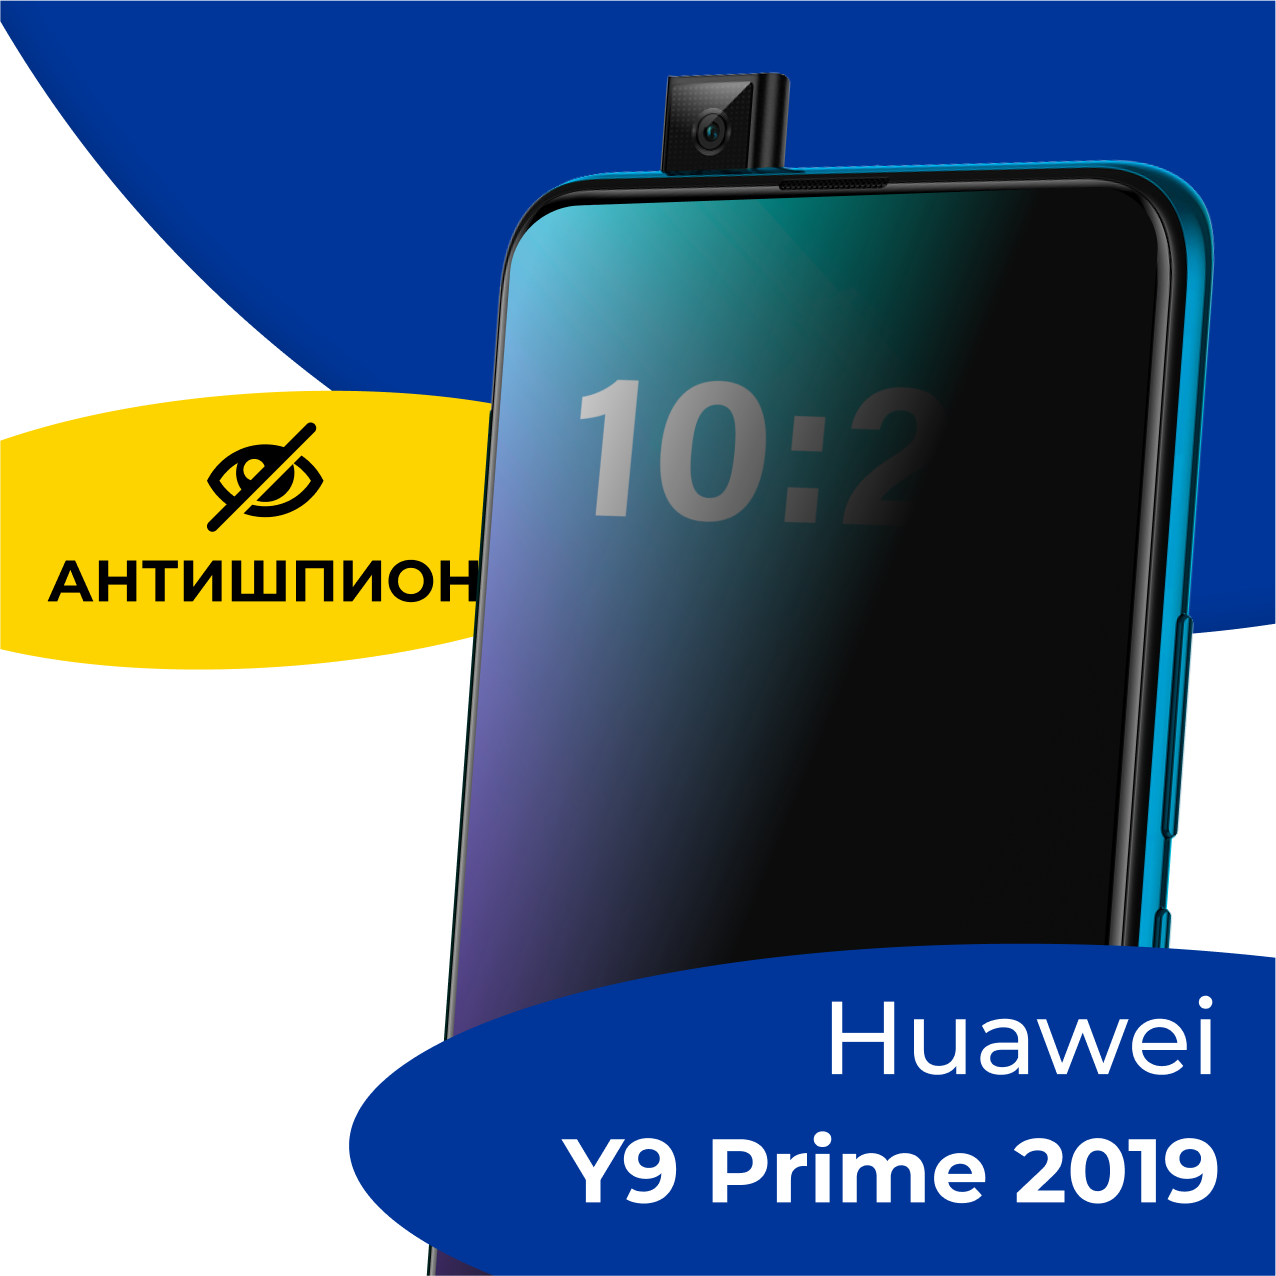 Защитное стекло Антишпион на телефон Huawei Y9 Prime 2019 / Противоударное стекло 5D для смартфона Хуавей У9 Прайм 2019 с олеофобным покрытием